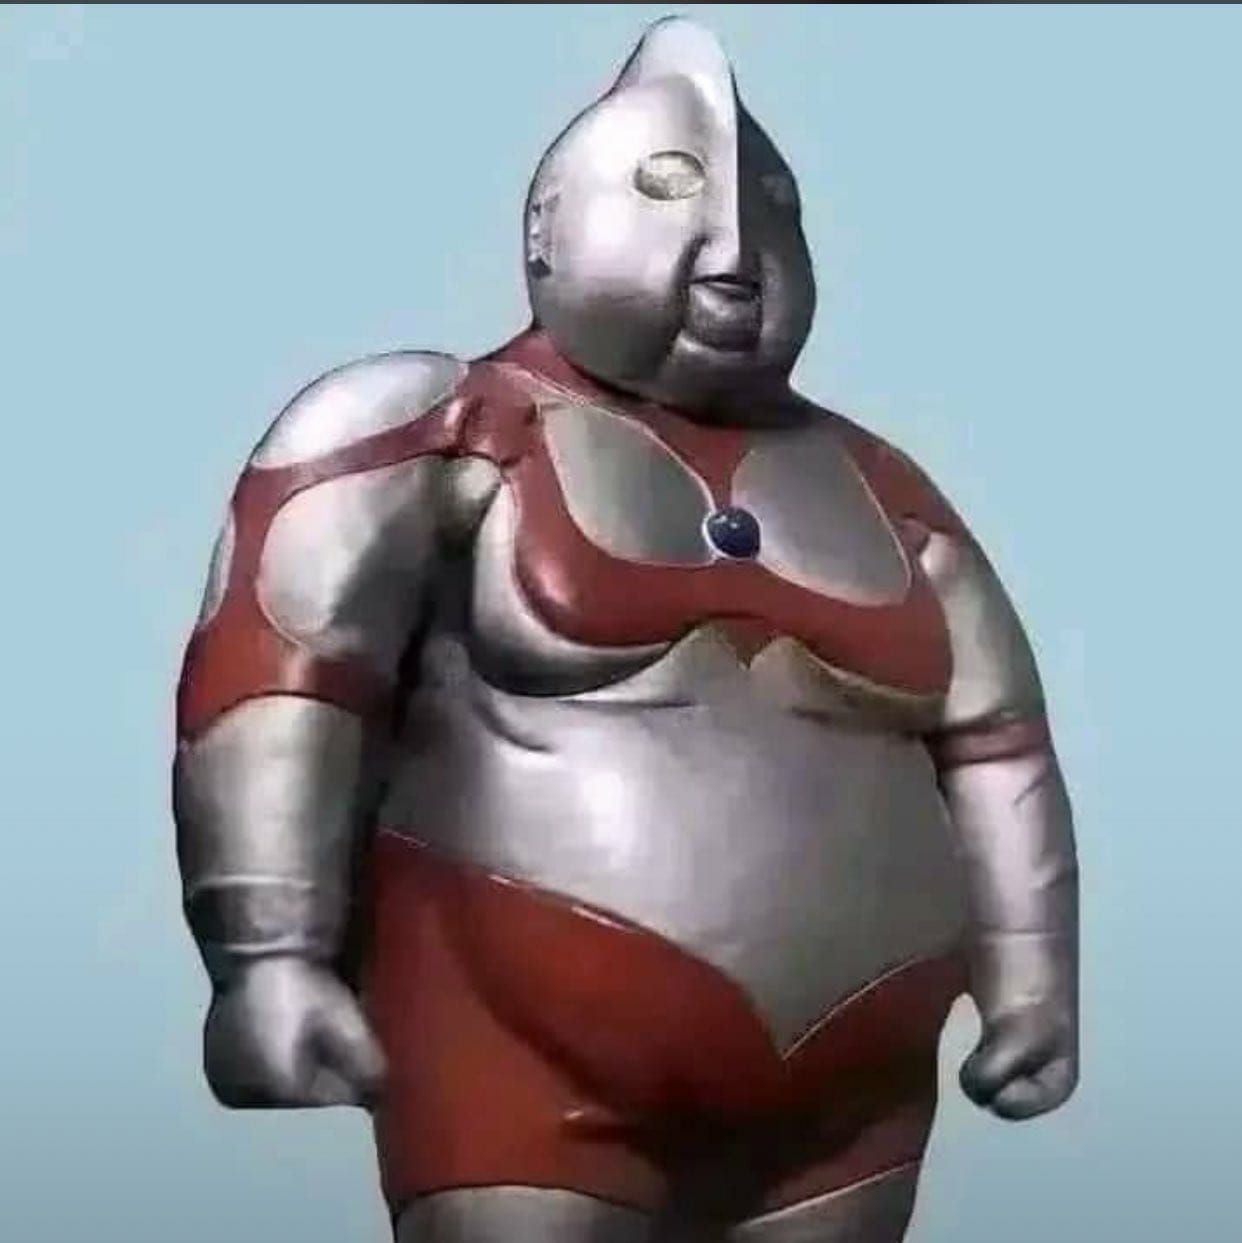 Ultraman Gendut